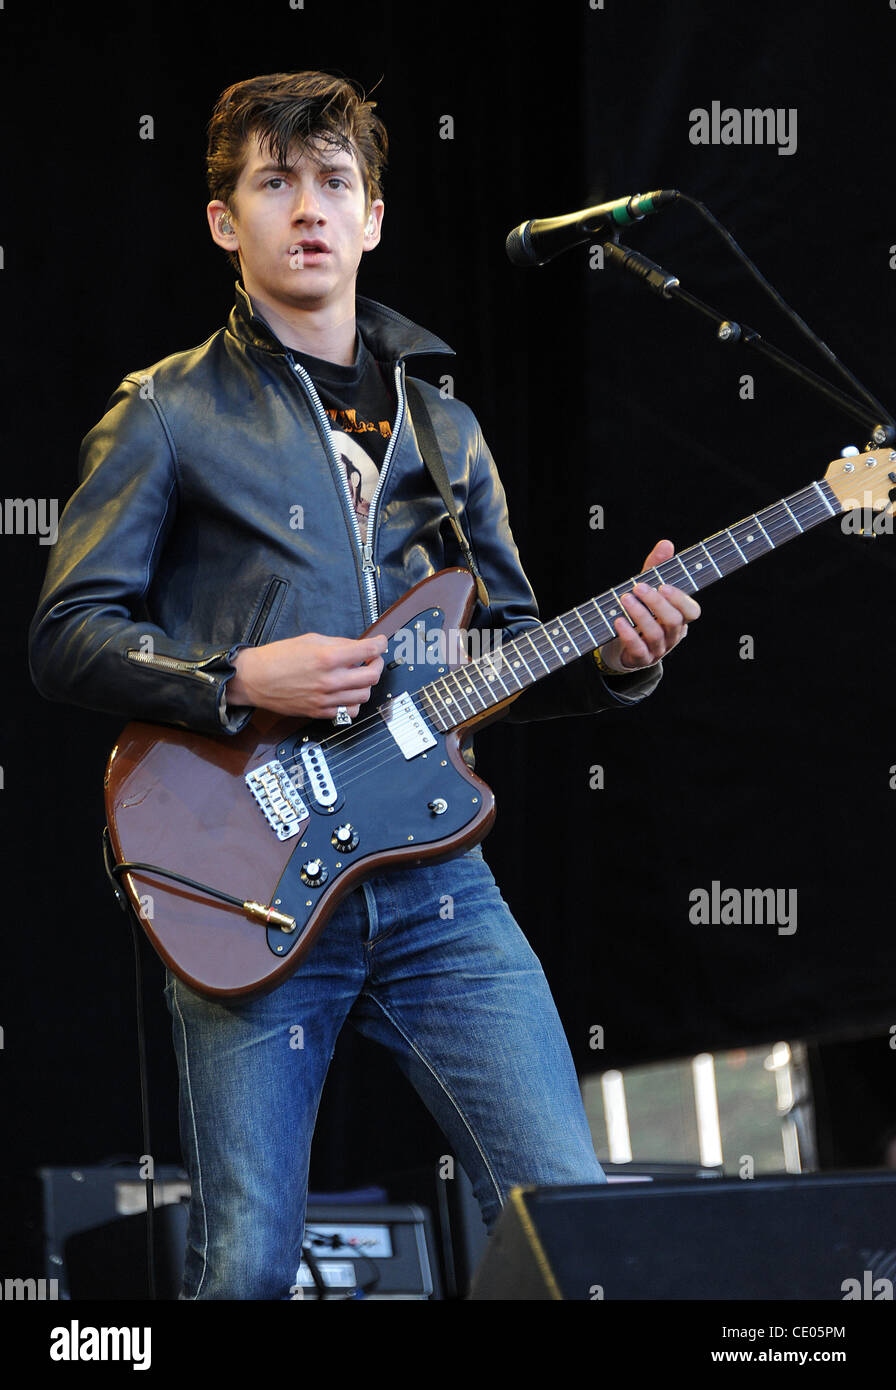 Agosto 13, 2011 - San Francisco, California, EE.UU. - cantante /  guitarrista Alex Turner de Arctic Monkeys la banda realiza en vivo como  parte del Festival de Música de 2011 fuera de